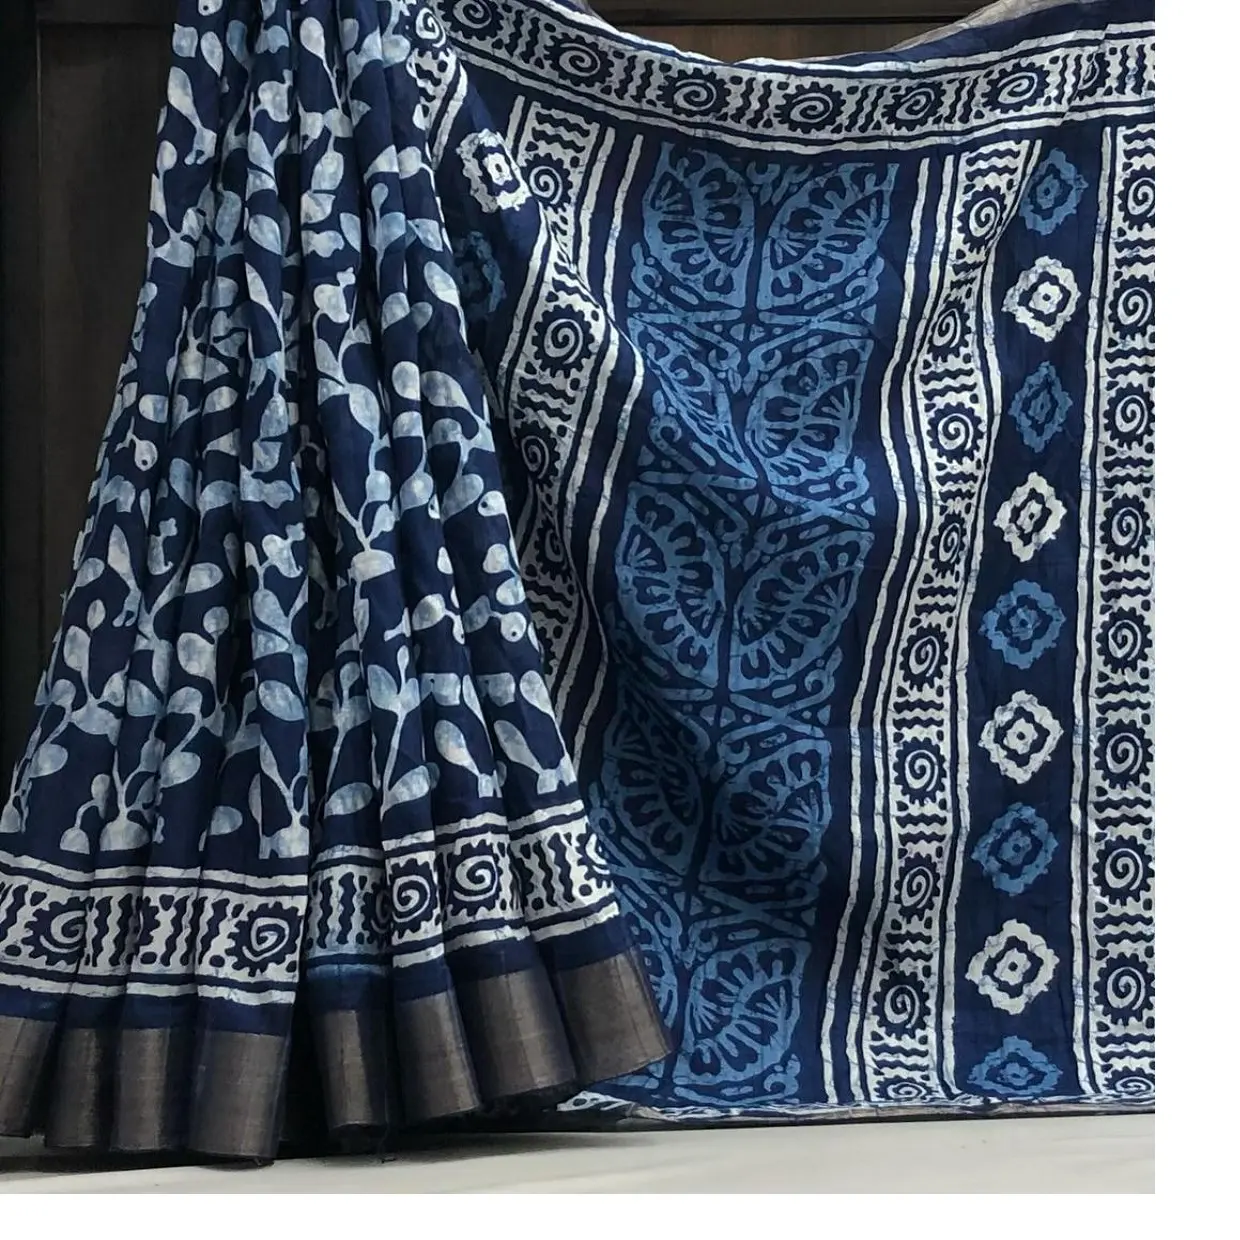 Fait sur mesure dans la conception abstraite doux handloom indigo imprimé saris avec zari patti frontière y compris chemisier dans la conception florale.